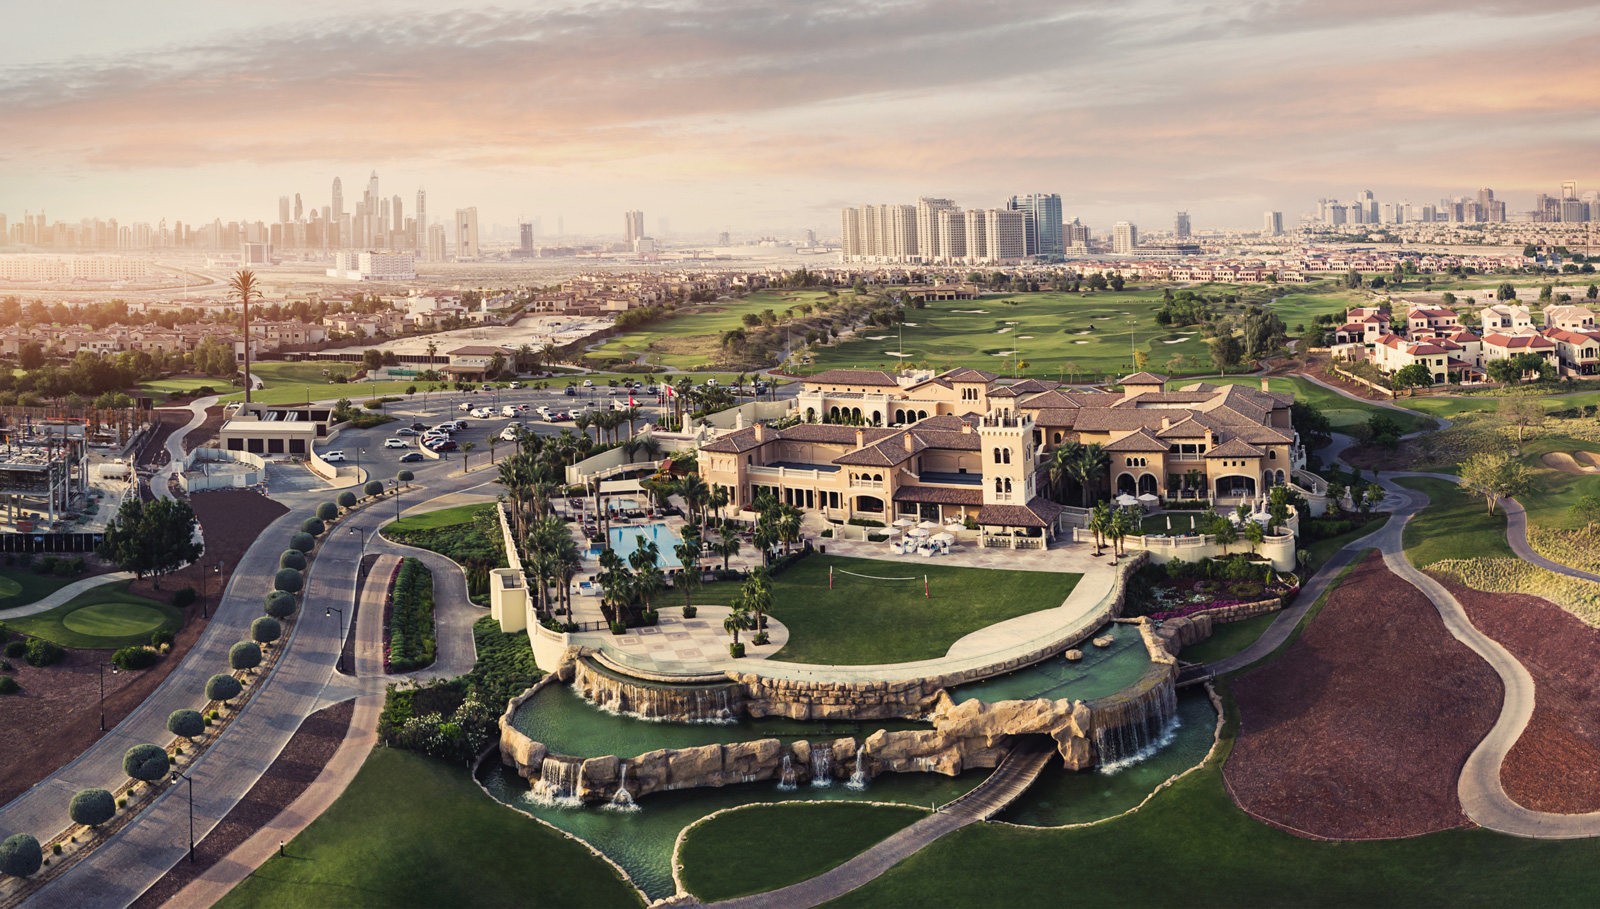 عقارات جميرا للجولف تطلق عروضاً حصرية لمشروعي الأندلس وريدوود بارك  خلال فترة بطولة جولة موانئ دبي العالمية للجولف